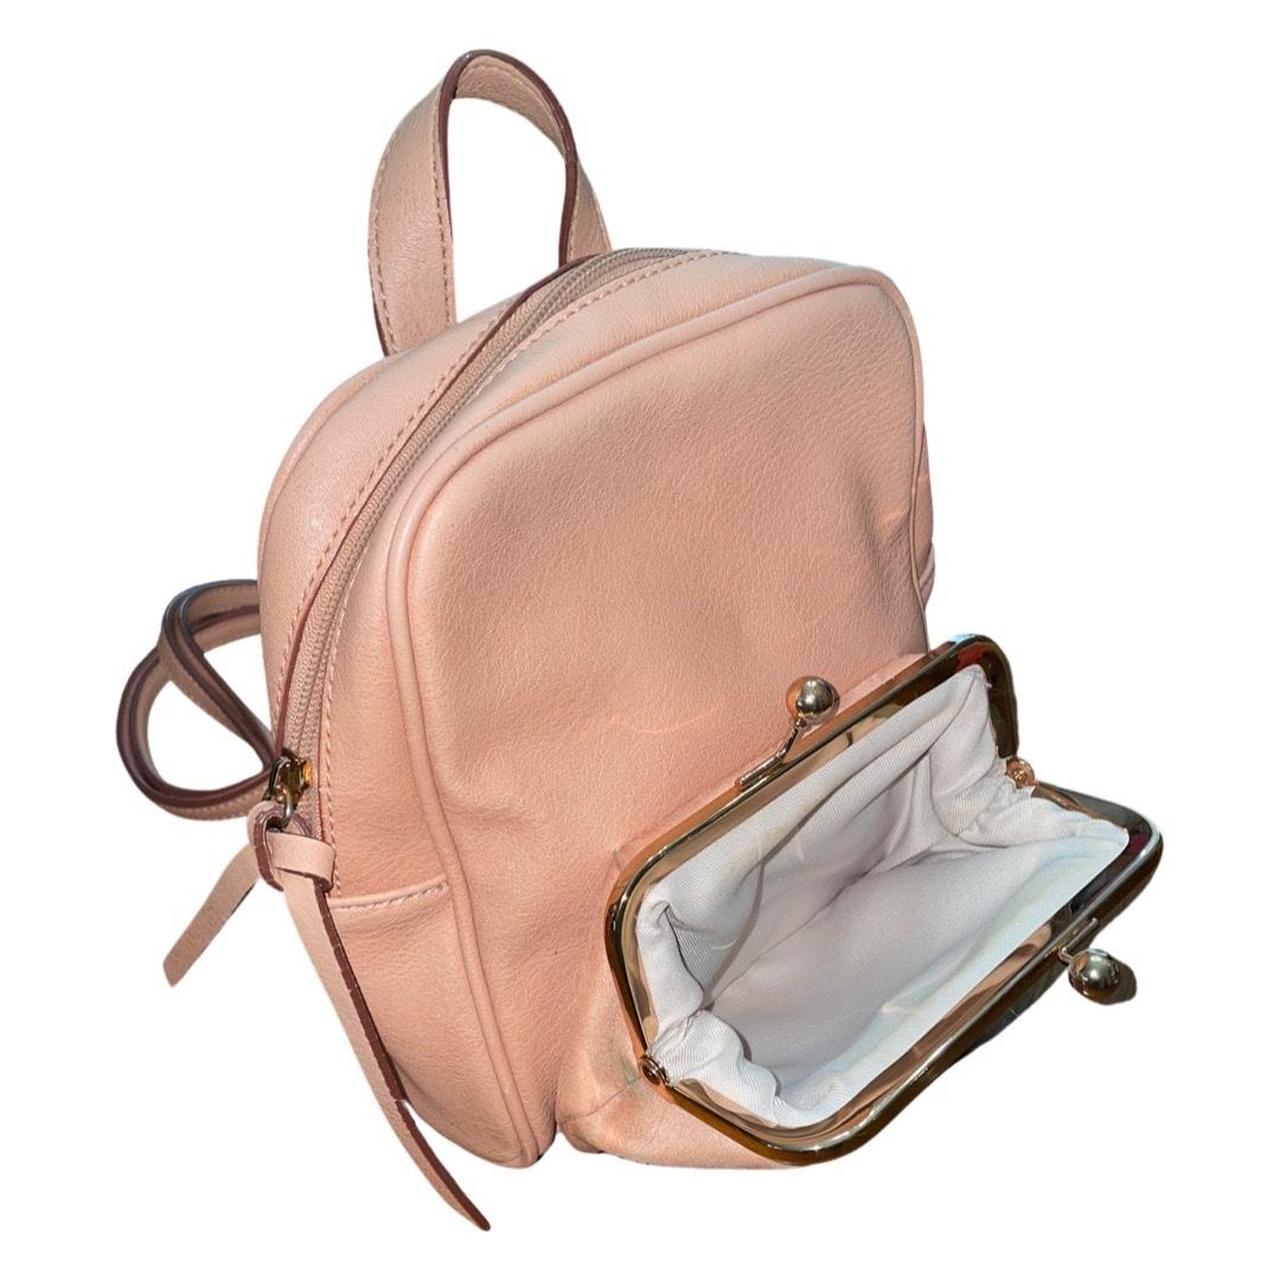 LC Lauren Conrad Mini Backpack  Lc lauren conrad, Mini backpack, Lauren  conrad